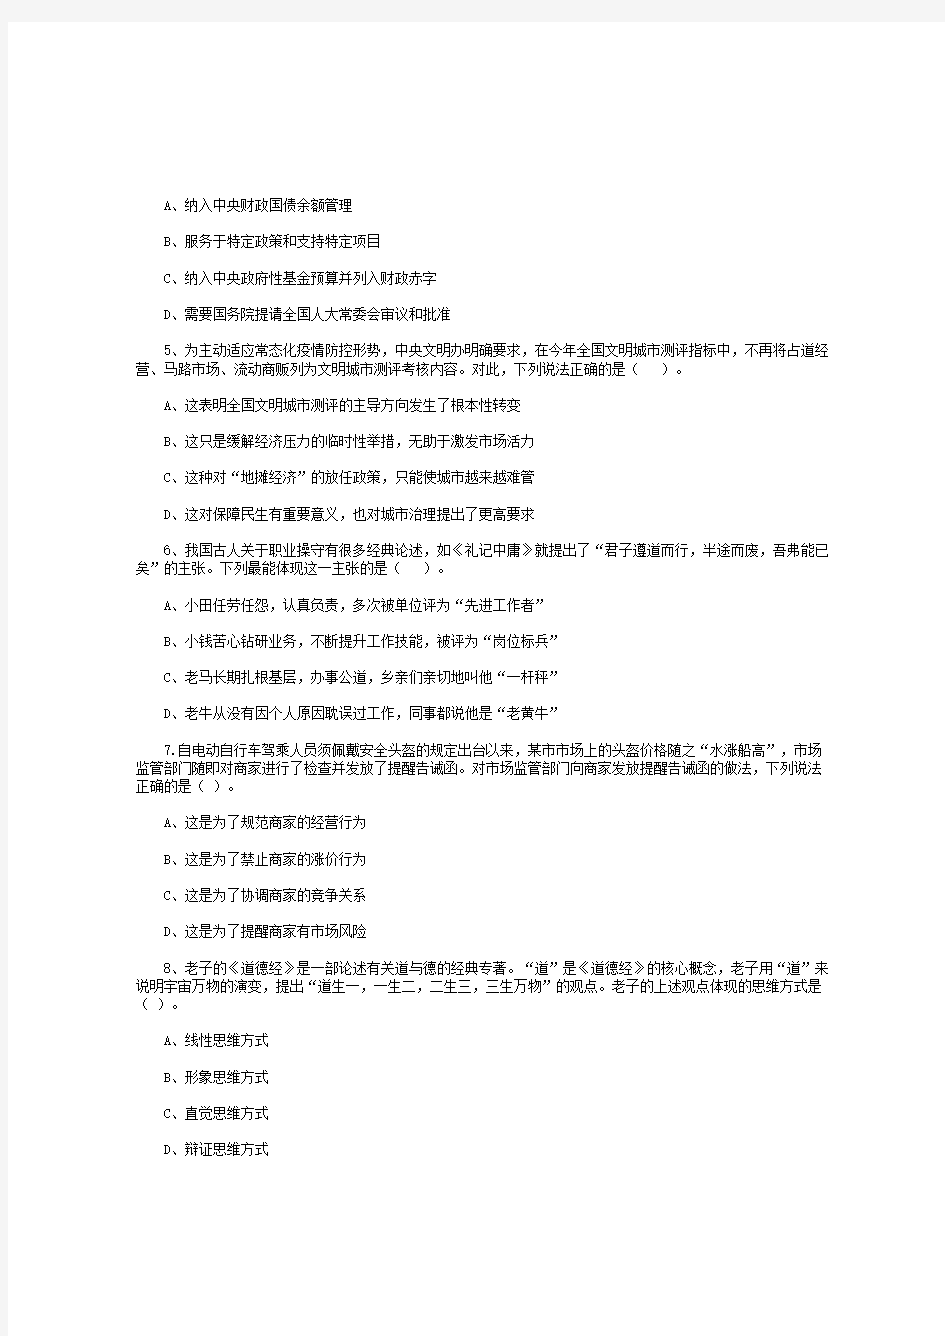 2020年江苏事业单位统考笔试真题及答案(完整版)